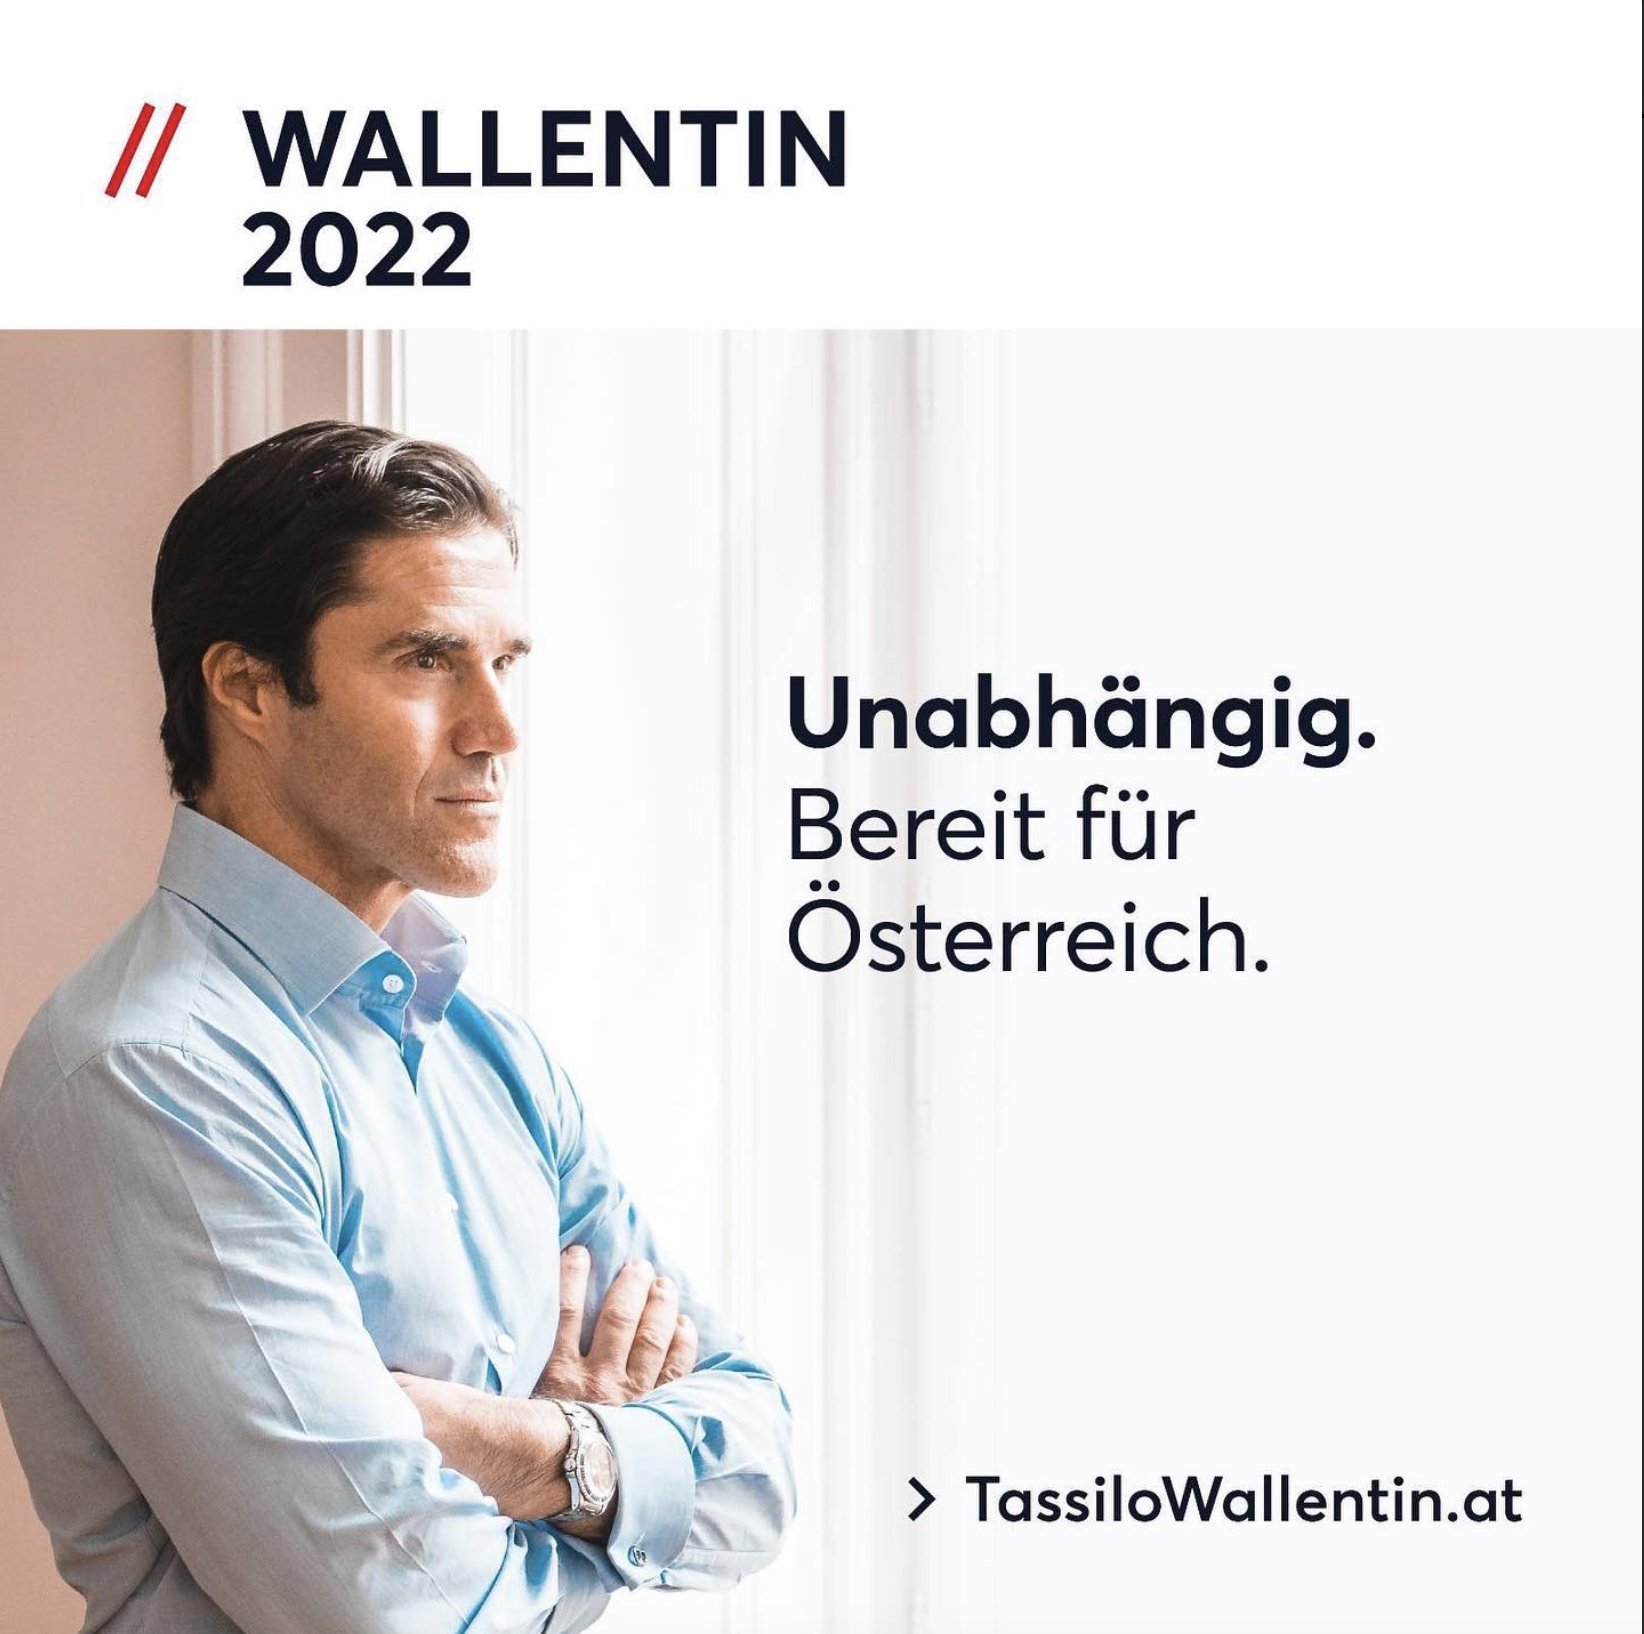 Plakat von Tasillo Wallentin, Top-Anwalt, Kolumnist und Kandidat für die österreichische Präsidentschaftswahl 2022, auf dem er nachdenklich nach rechts in seinem Büro blickt, mit dem Slogan 'Unabhängig und bereit für Österreich'.